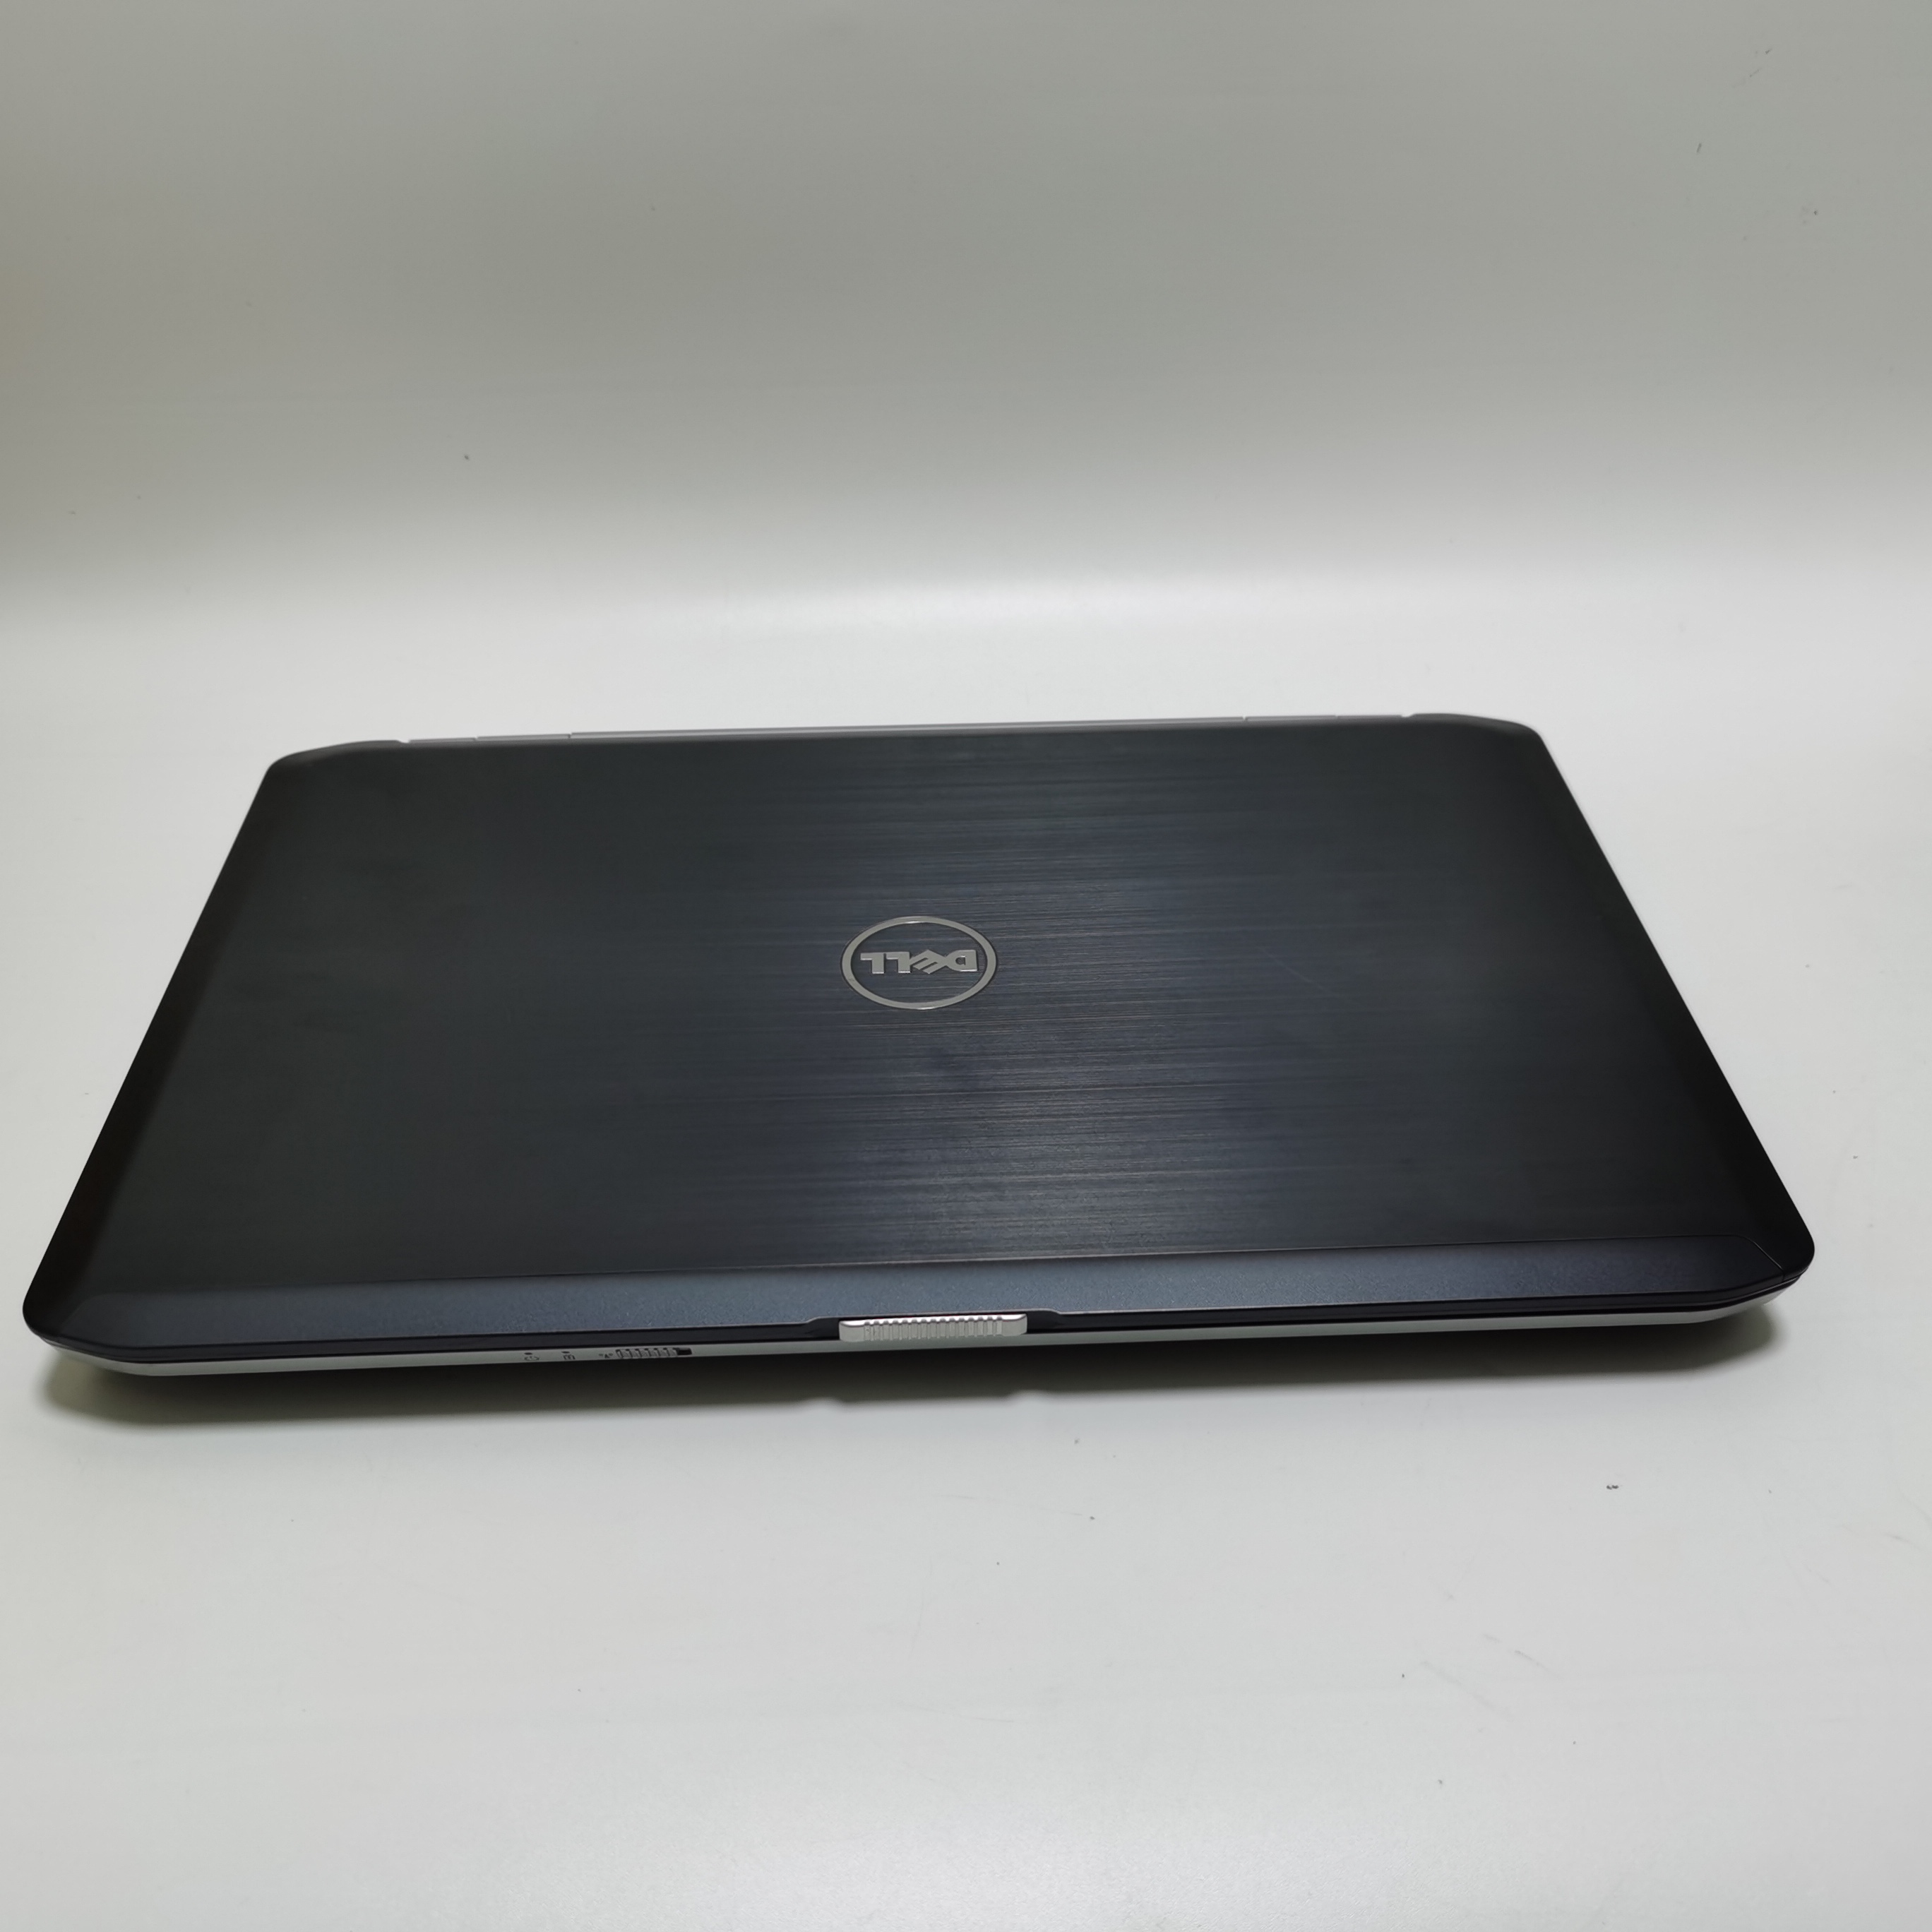 รูปภาพเพิ่มเติมเกี่ยวกับ โน๊ตบุ๊ค notebook Dell E5530 i5 gen3 15.6 inch  //  Lenovo ThinkPad  M14 โน๊ตบุ๊คมือสอง  โน๊ตบุ๊คถูกๆๆ  คอมพิวเตอร์  คอม  laptop pc